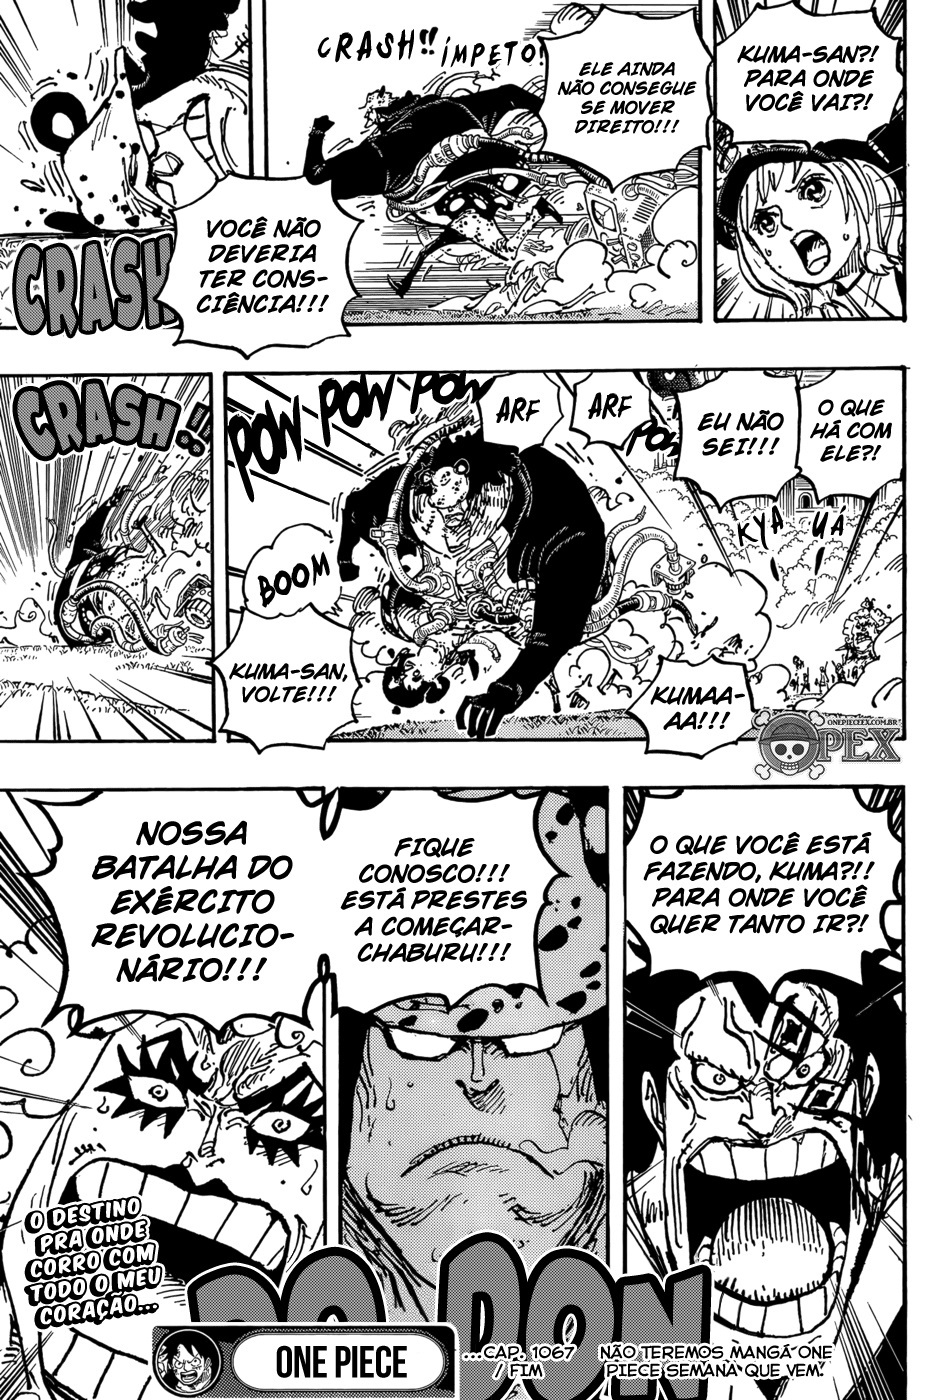 Kuma entra em ação no capítulo 1067 de One Piece (Reprodução)